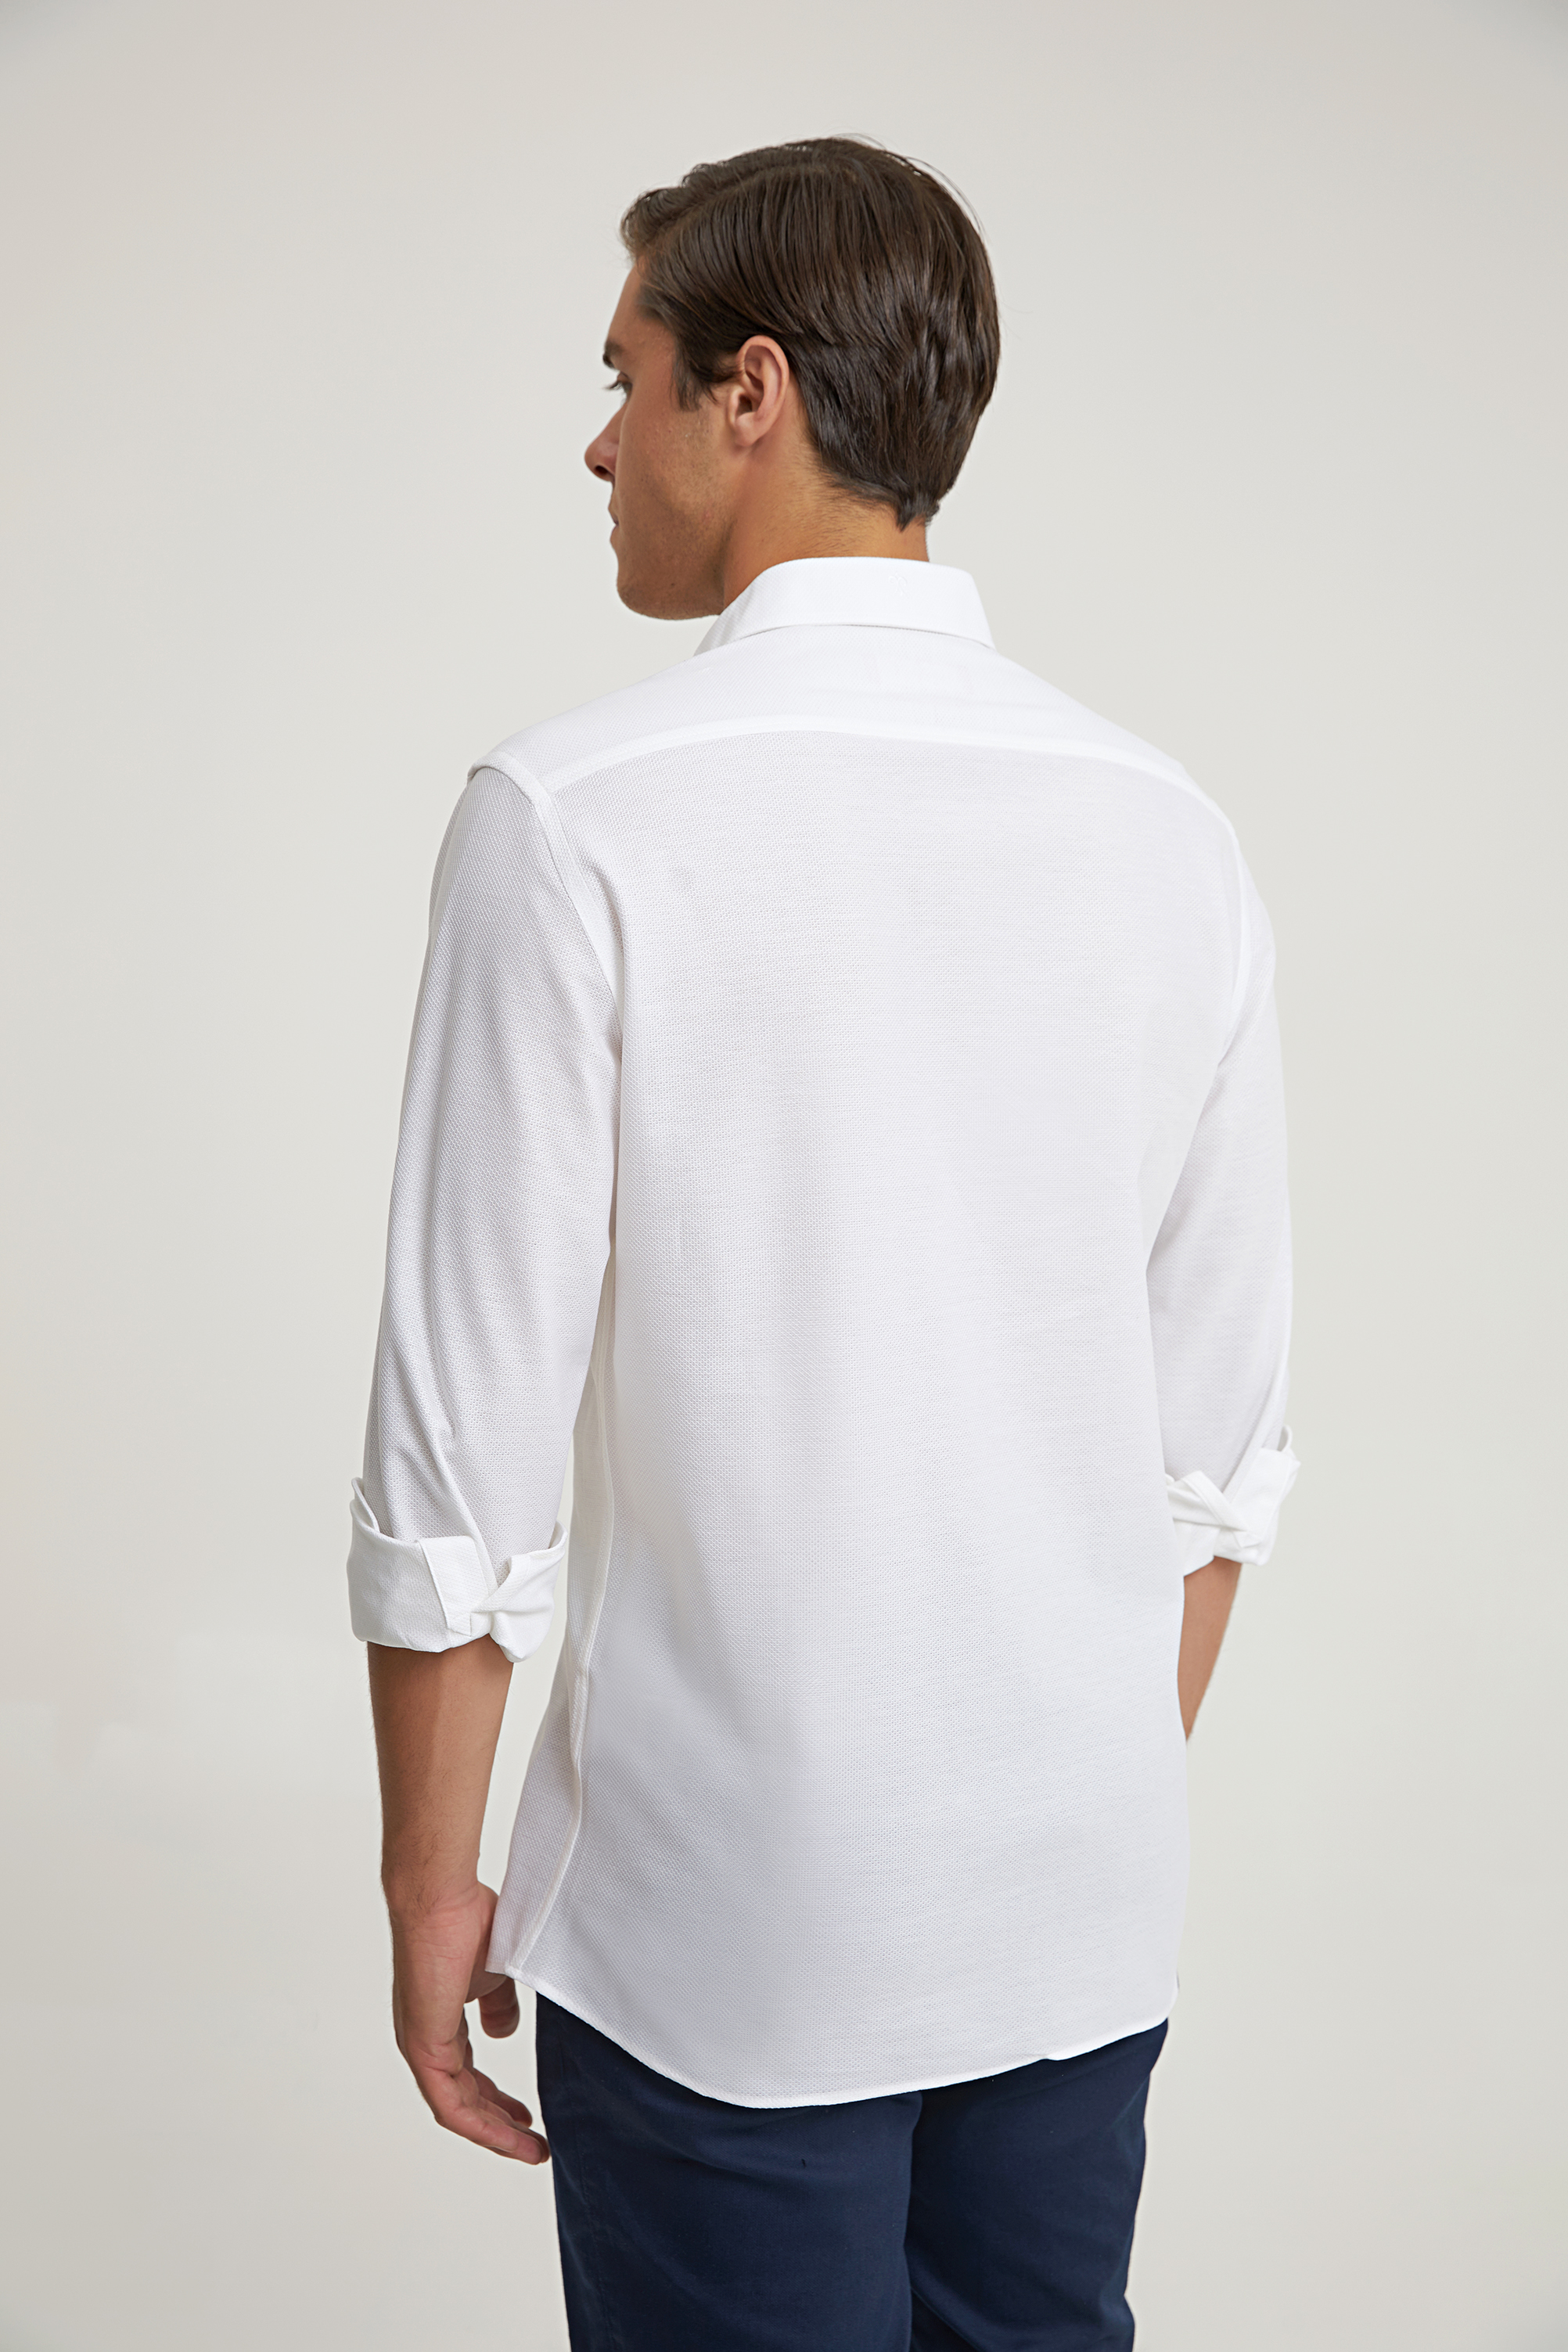 Damat Tween Damat Slim Fit Beyaz Düz Örme Gömlek. 4